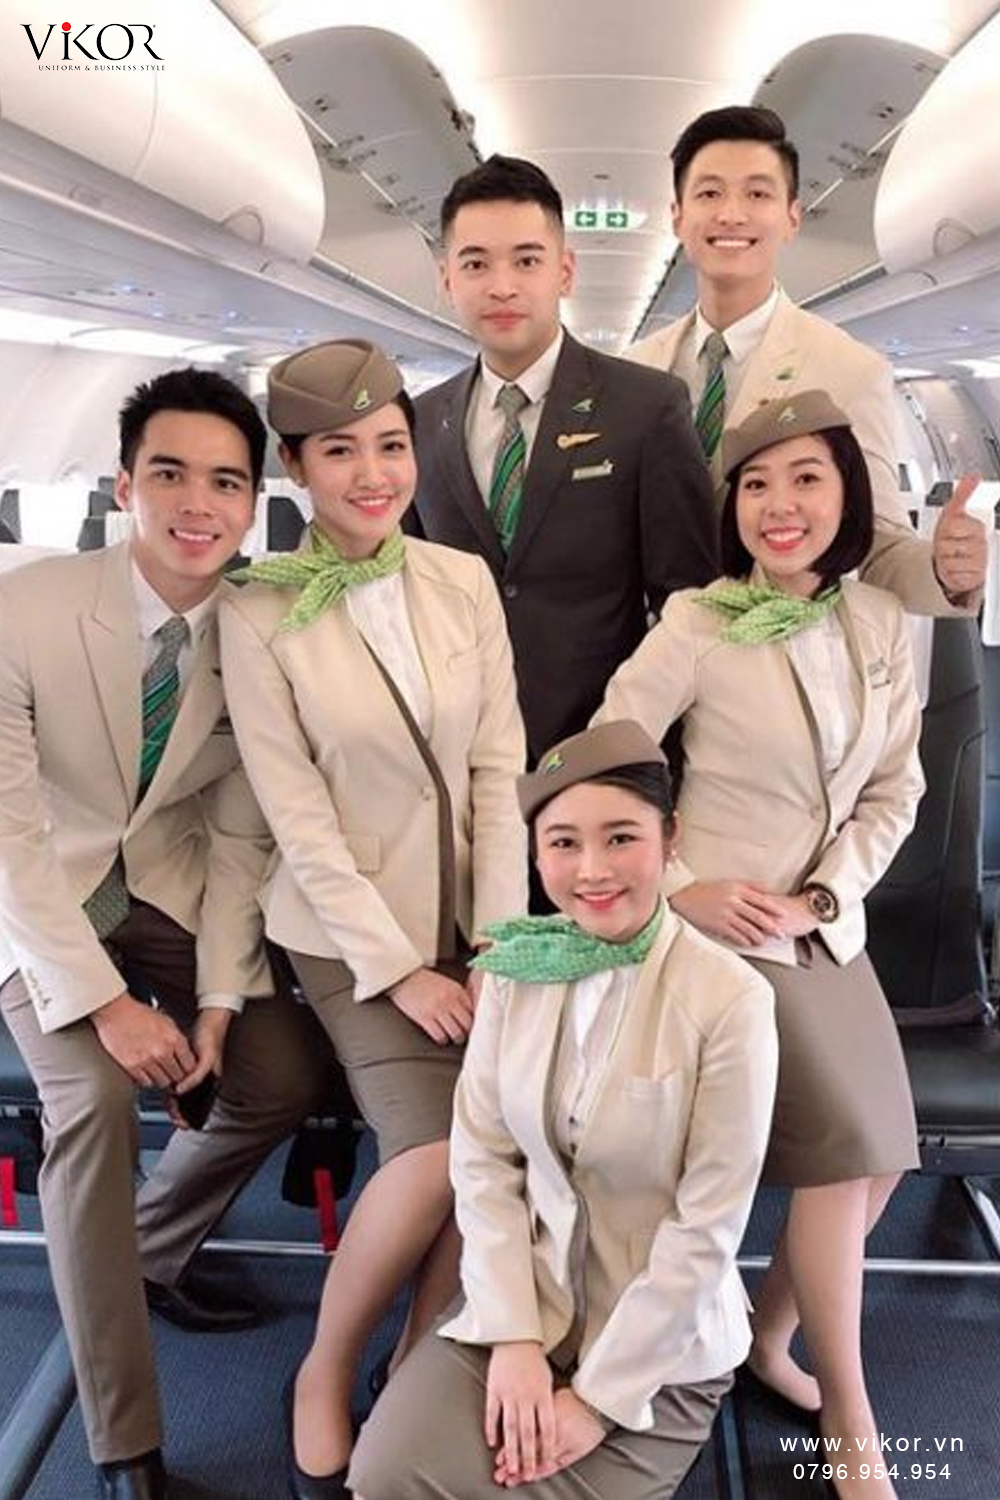 Đồng Phục Hàng Không Bamboo Airways - Đồng Phục Vikor